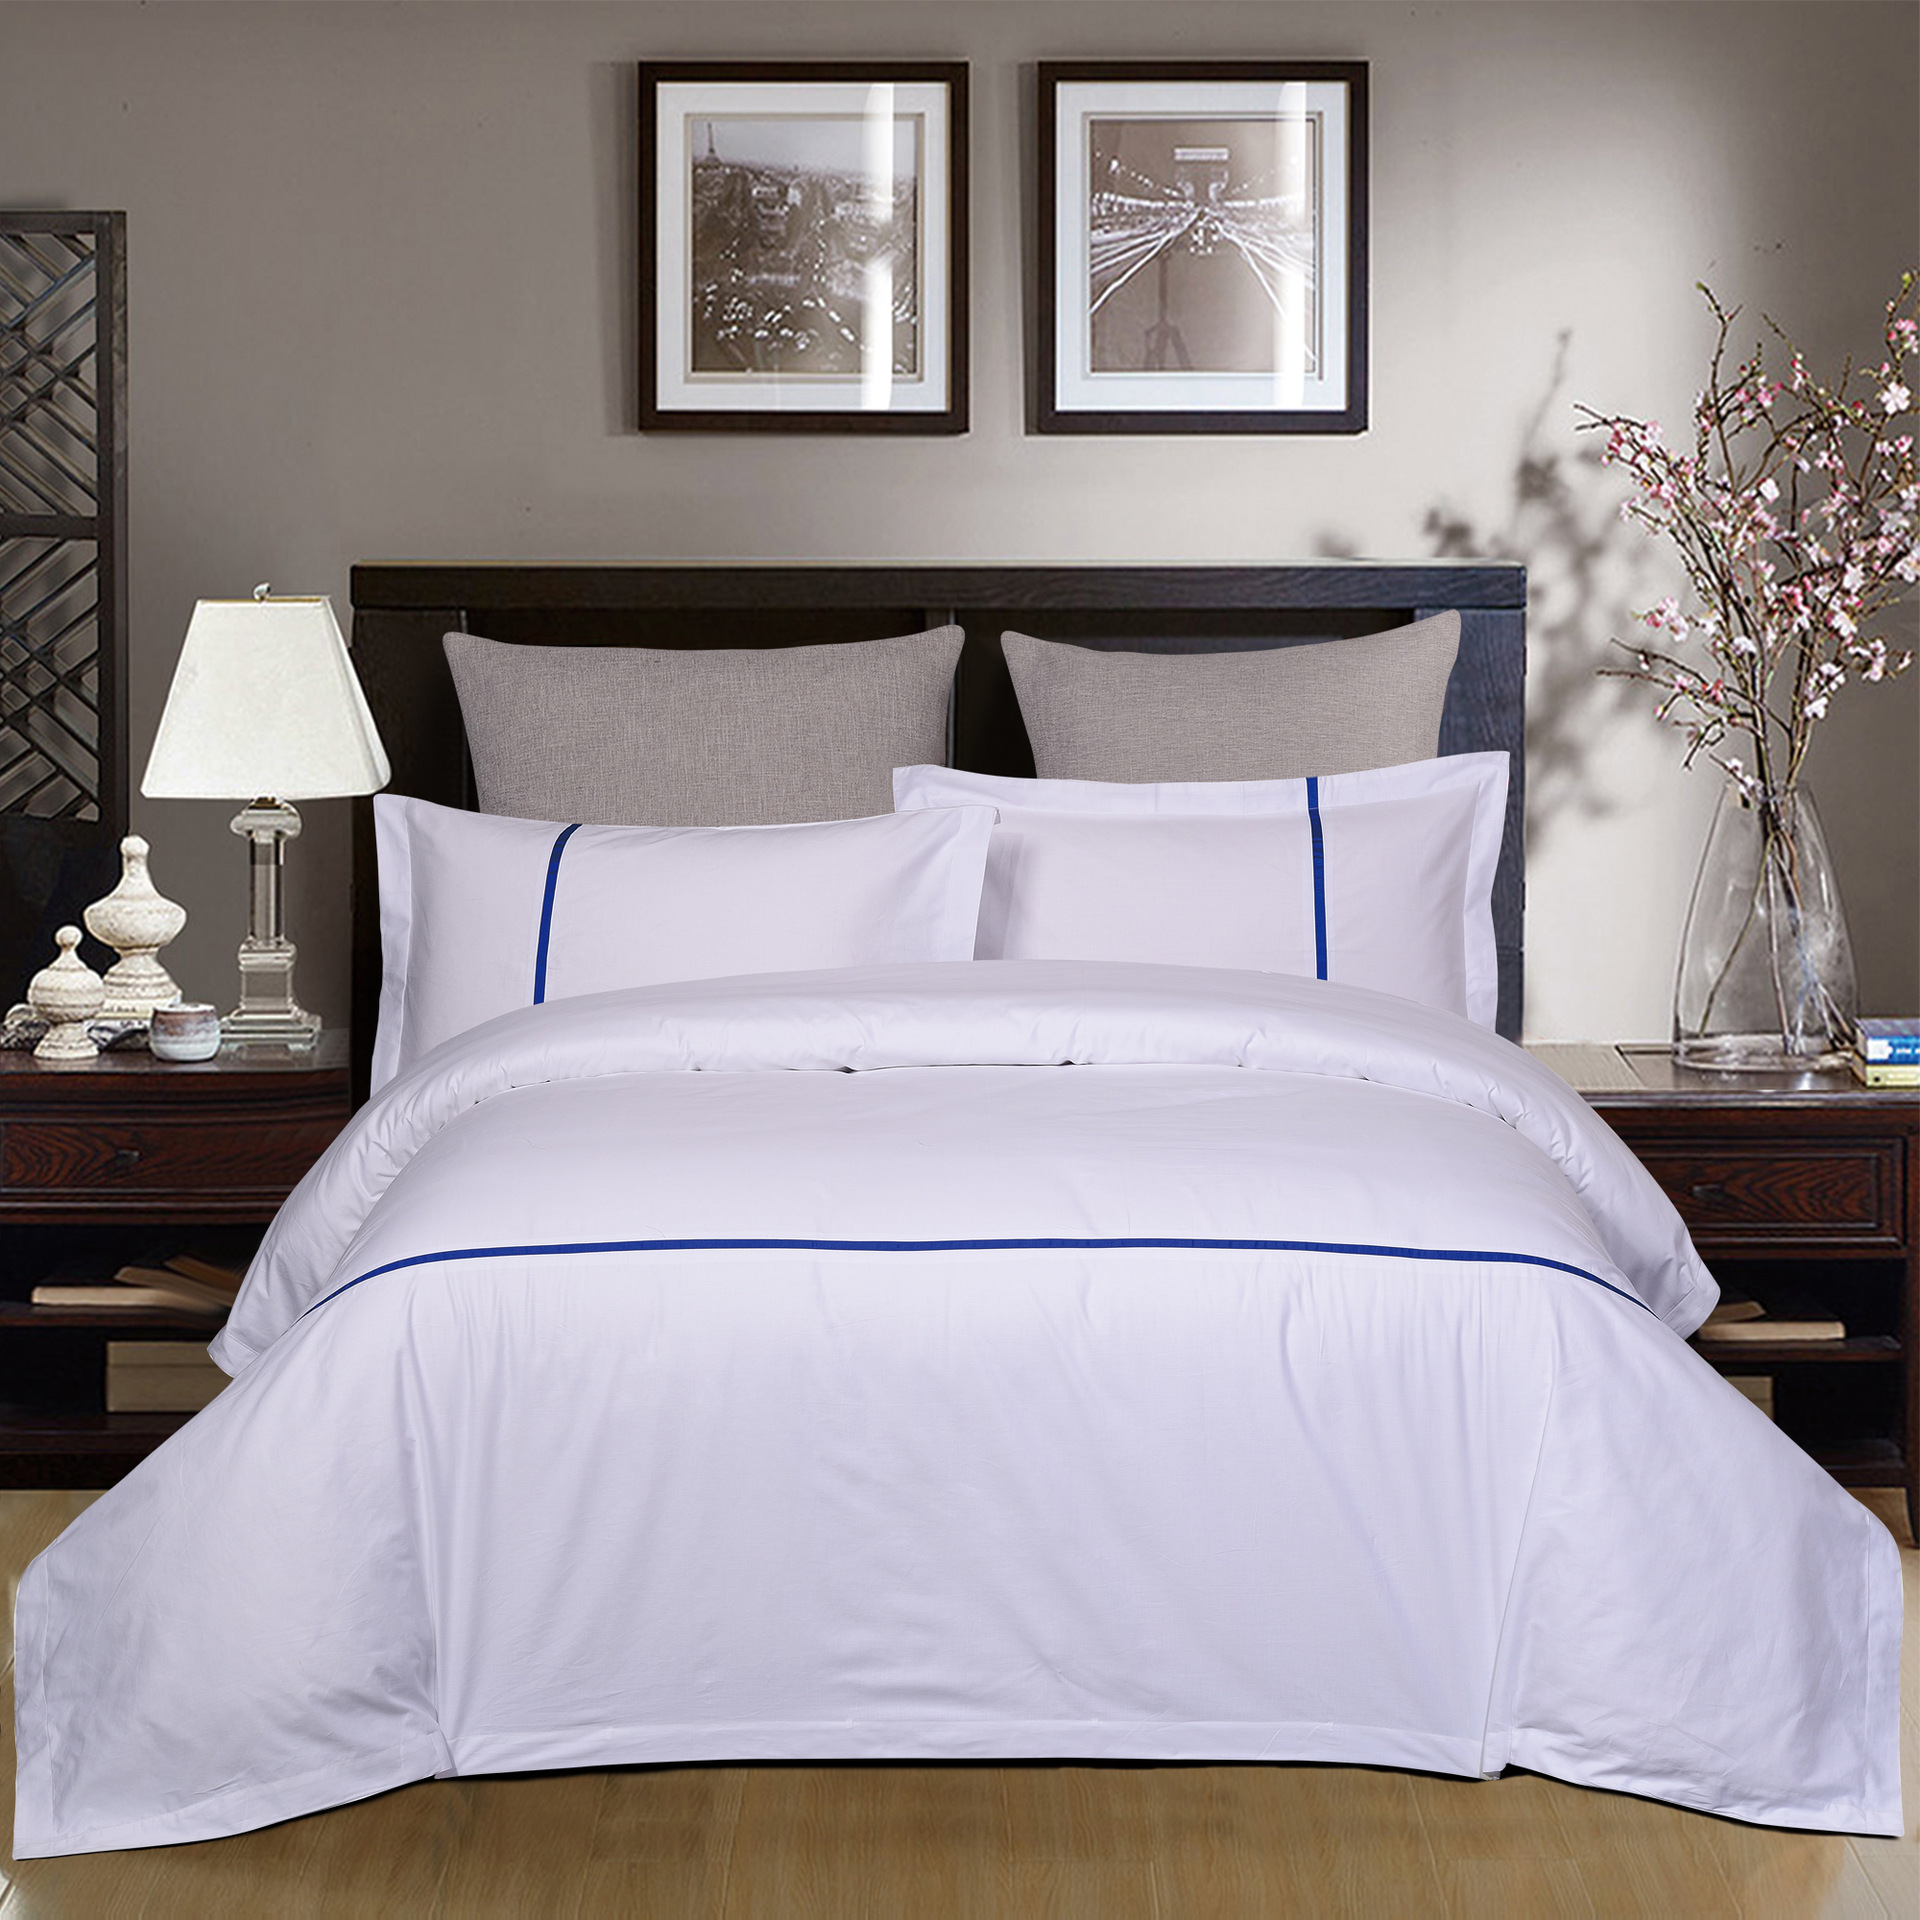 君芝友酒店用品賓館酒店床上用品四件套全棉純色貢緞4件套床單被套床品JZY-0009